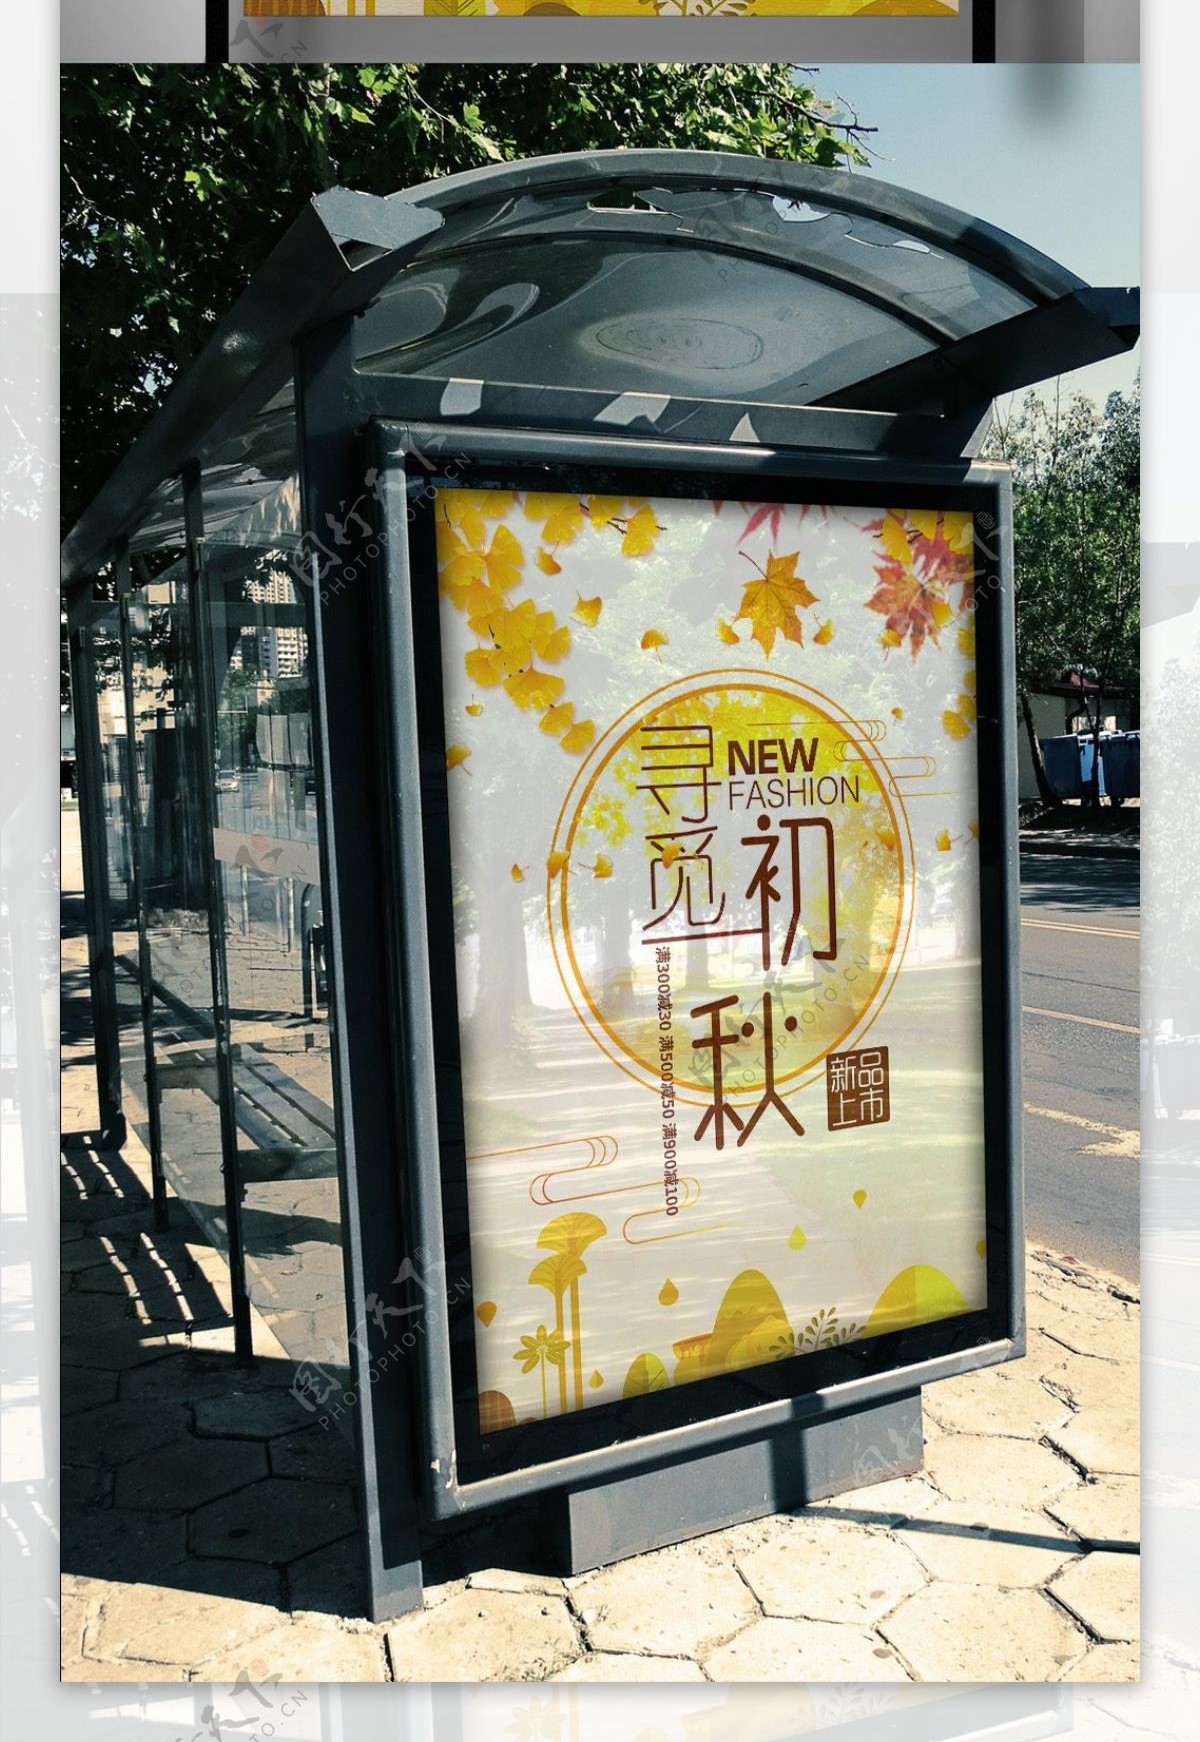 2017淡黄色背景秋季新品上市促销海报